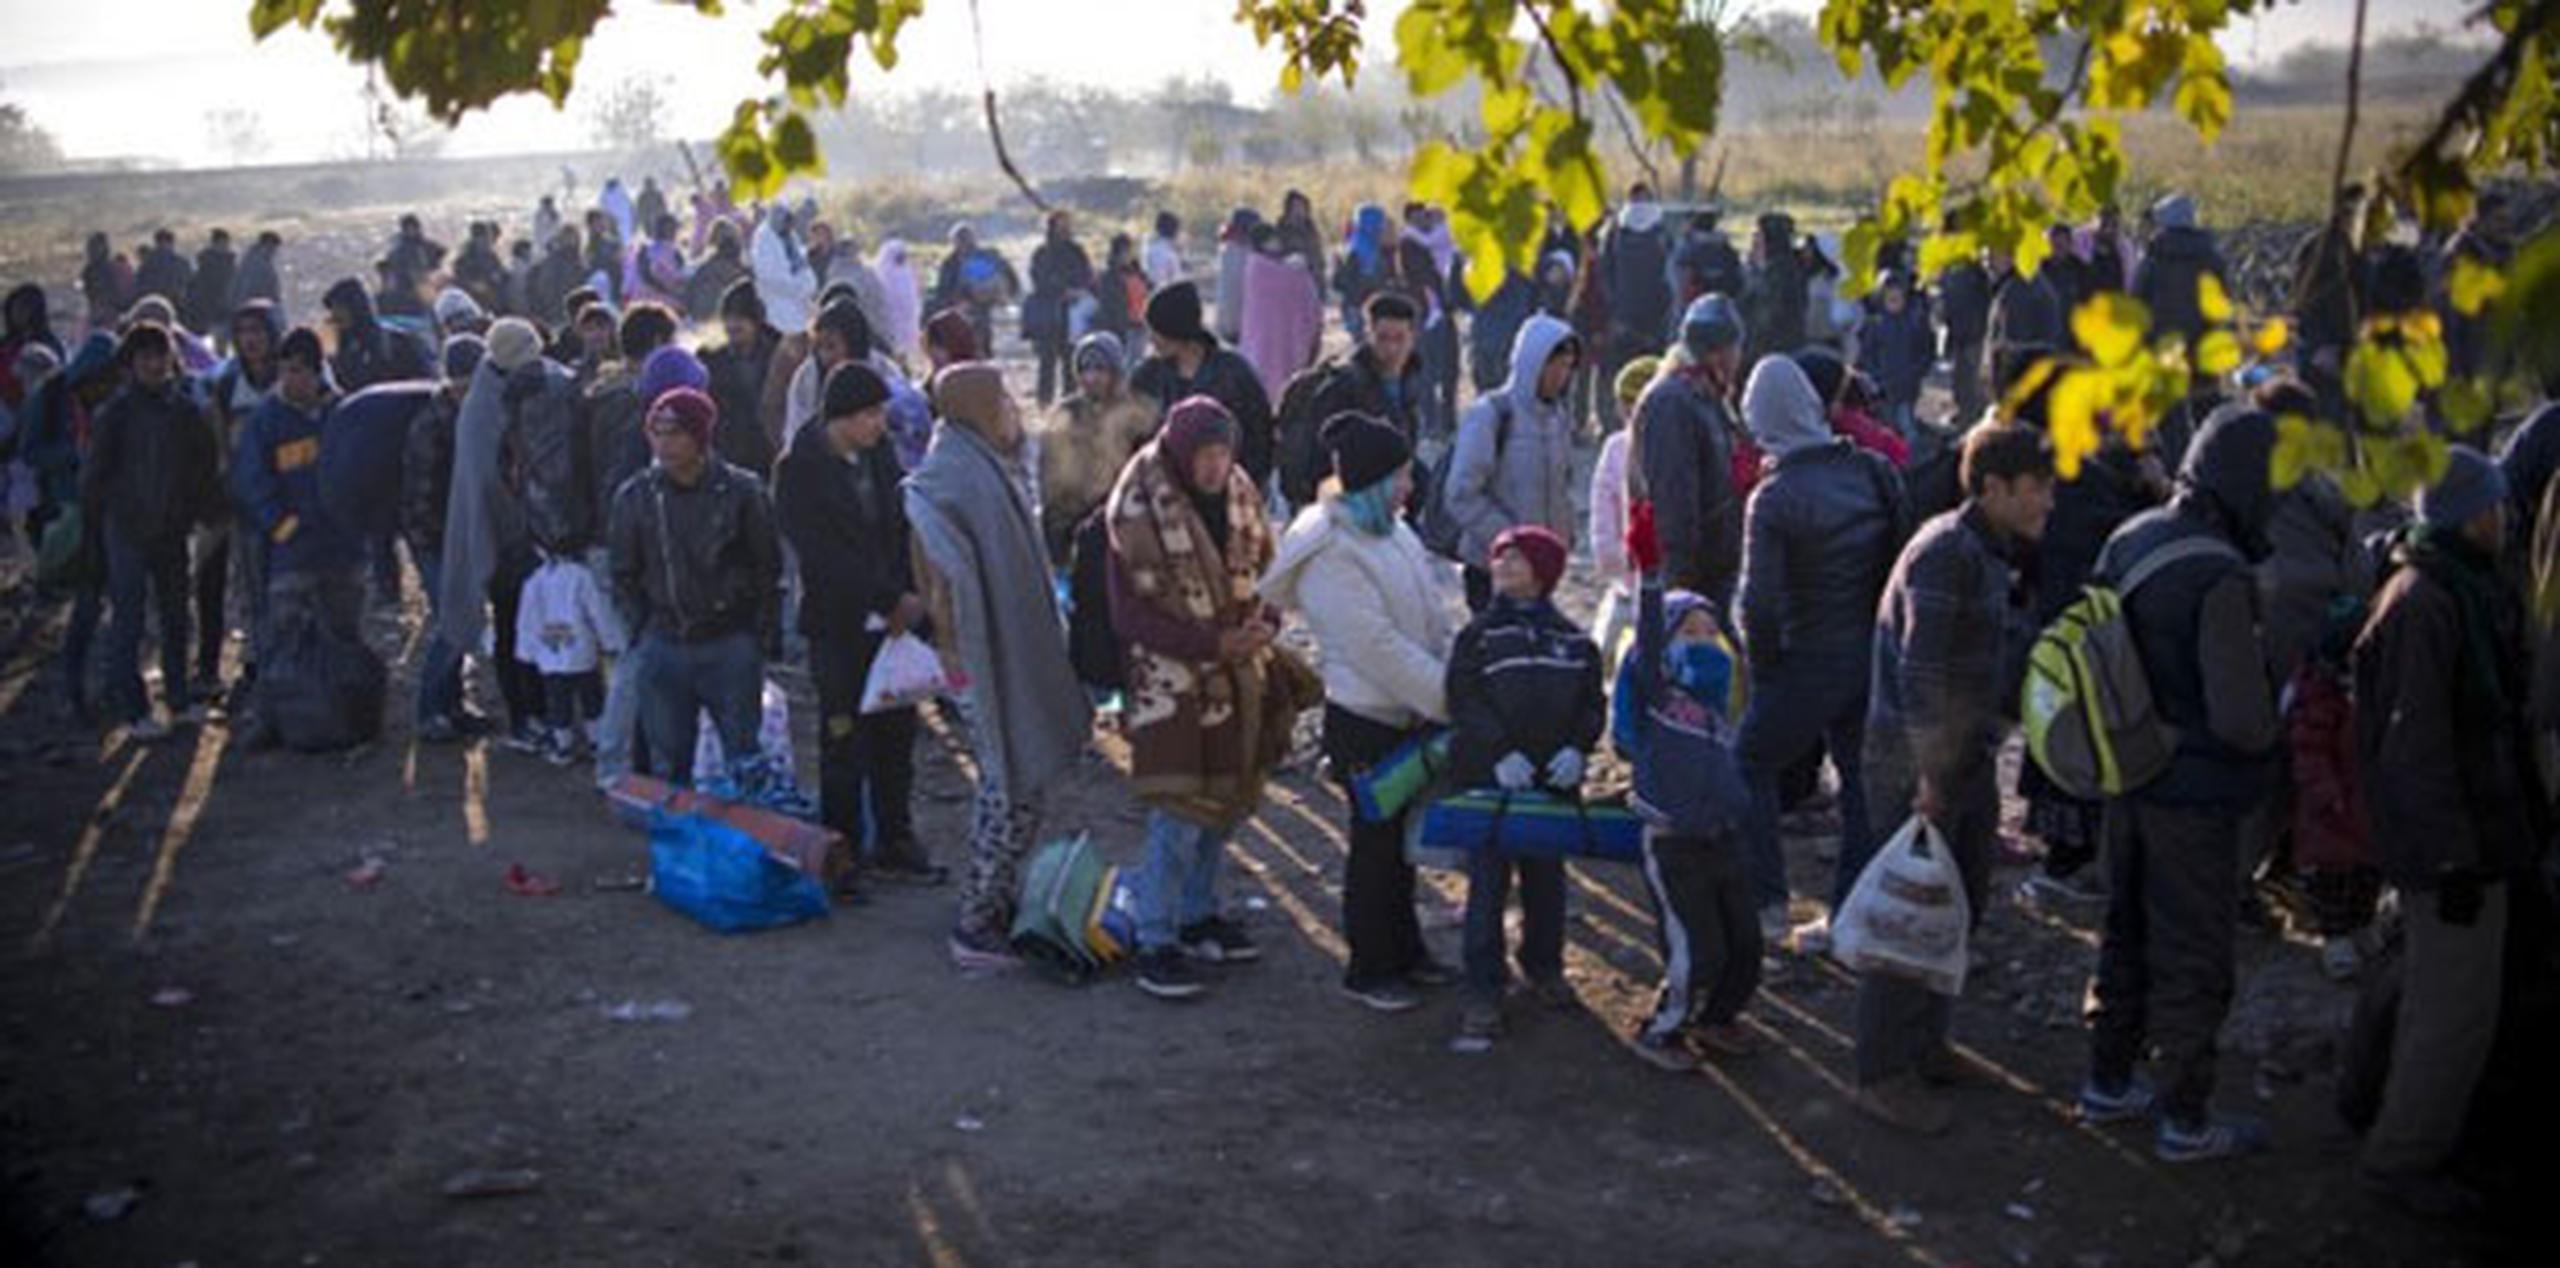 Migrantes y refugiados hacen turno para entrar en un campo de registro. (AFP / NIKOLAY DOYCHINOV)
